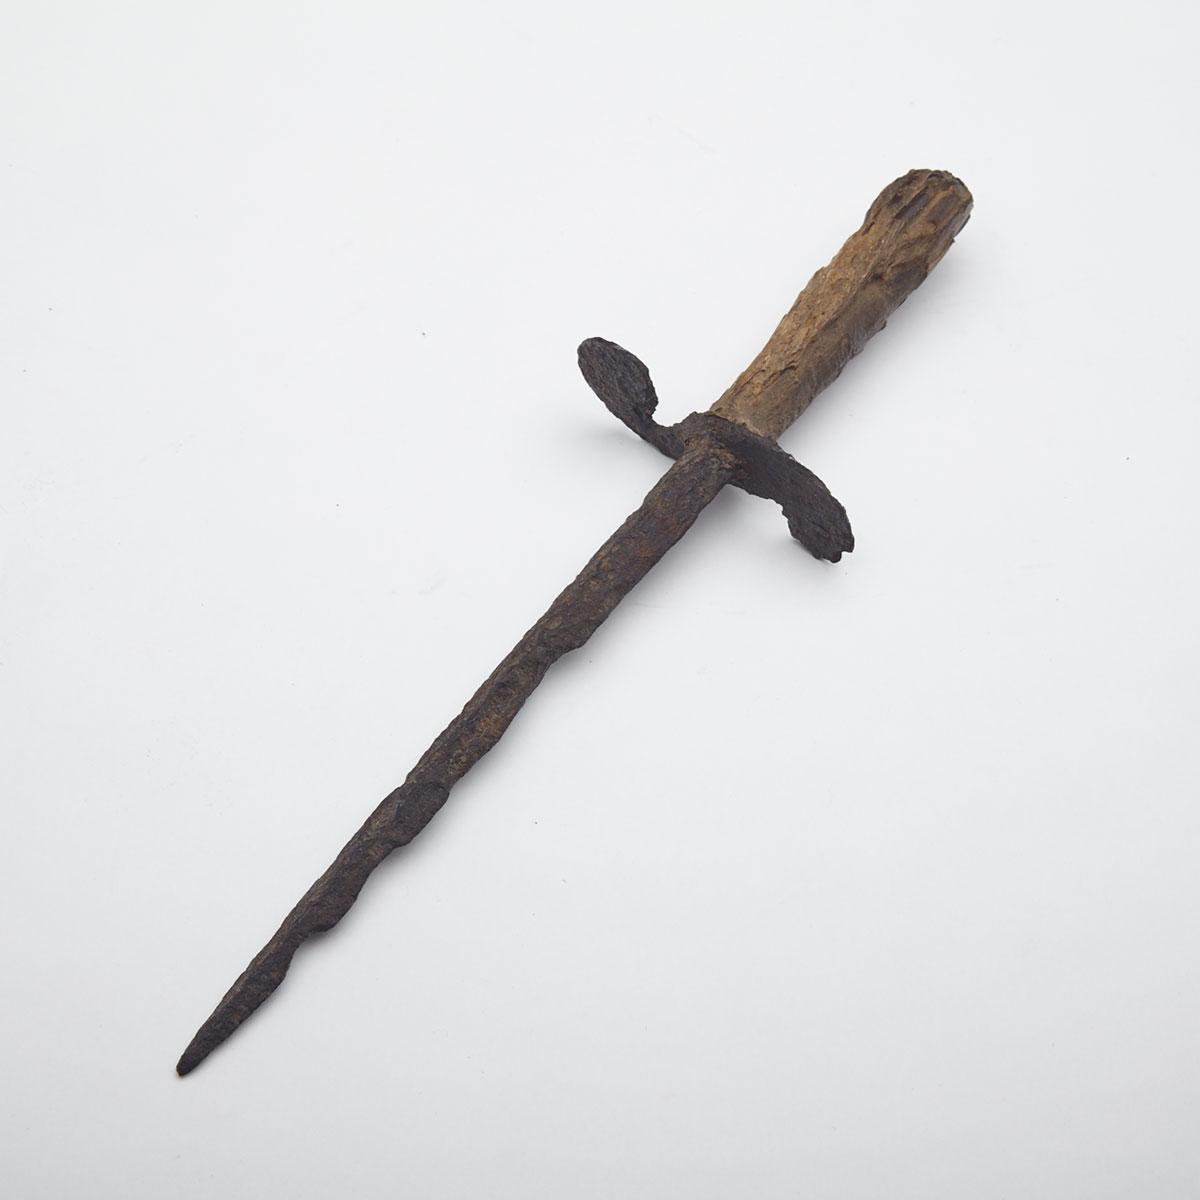 Italian Stiletto Dagger, 15th/16th century